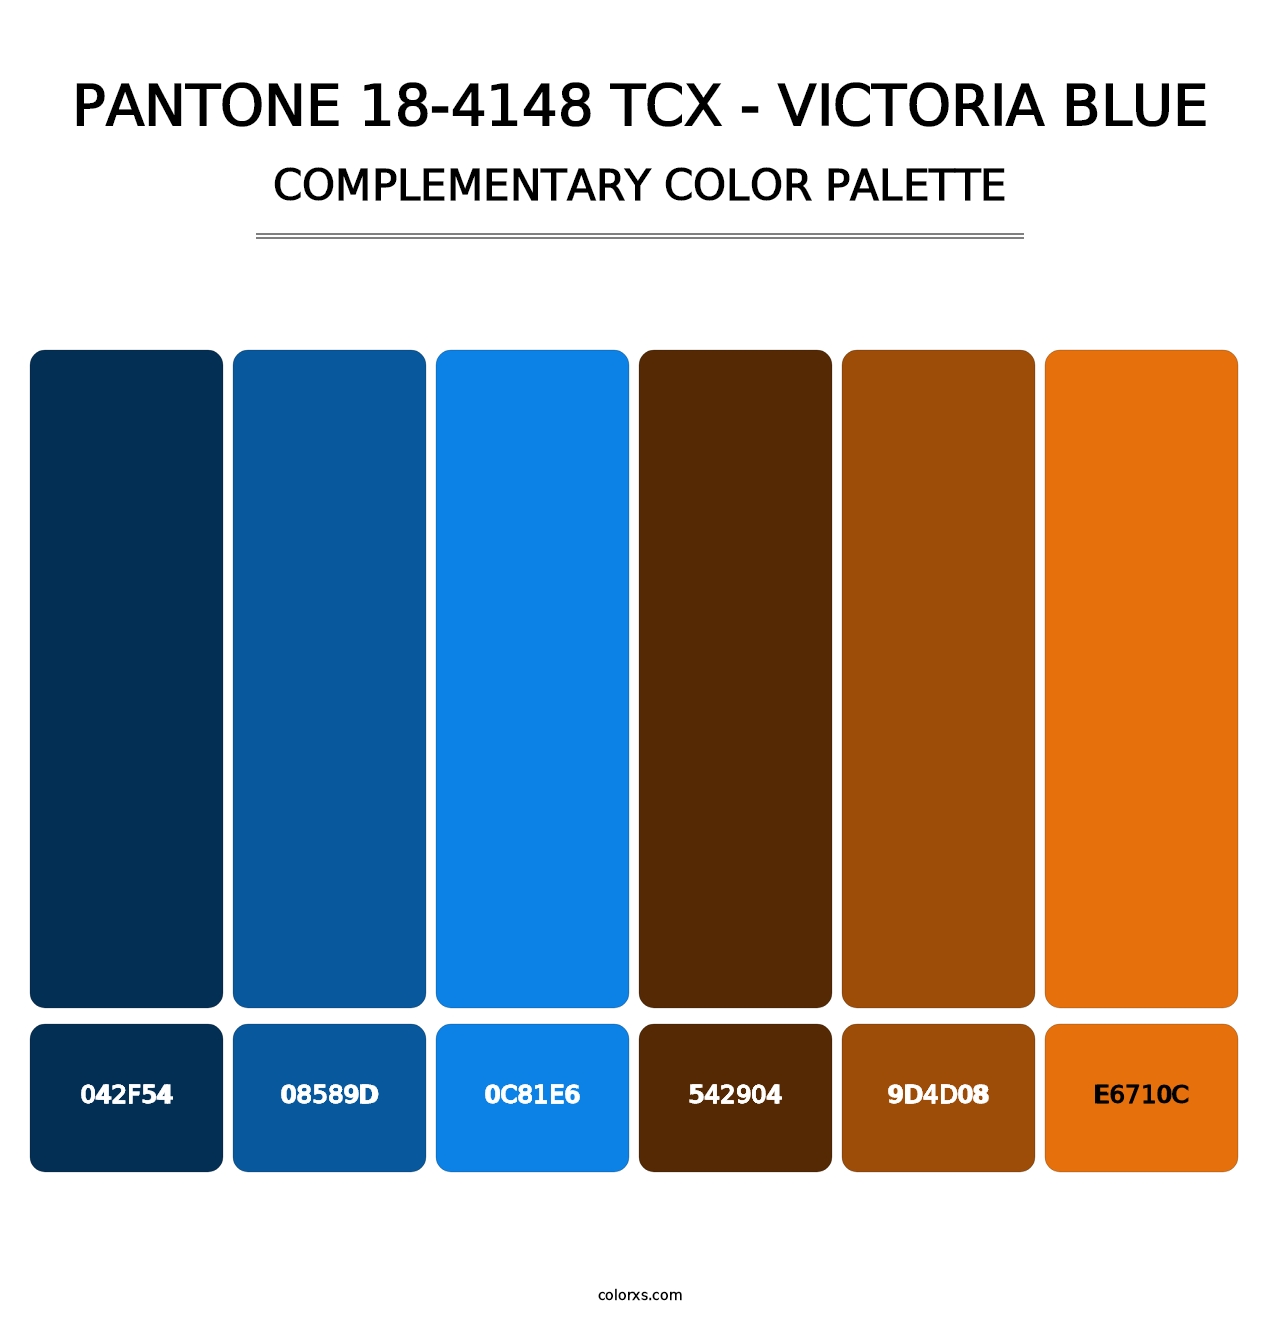 PANTONE 18-4148 TCX - Victoria Blue - Complementary Color Palette